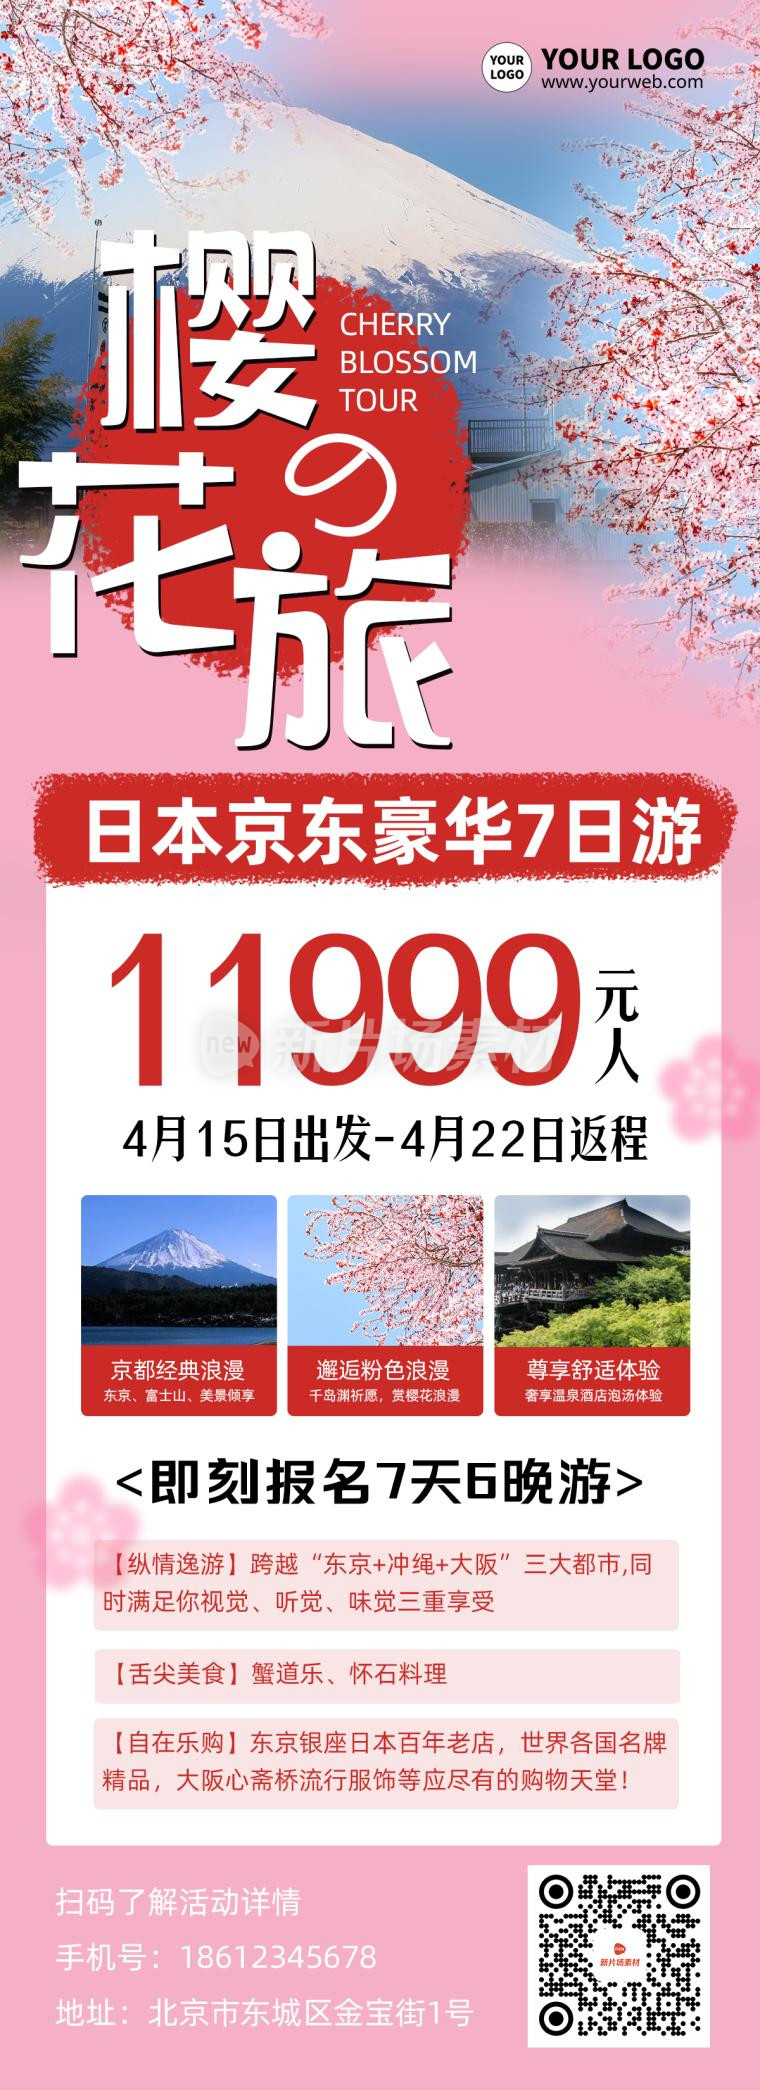 日本樱花旅游创意时尚营销详情长图海报